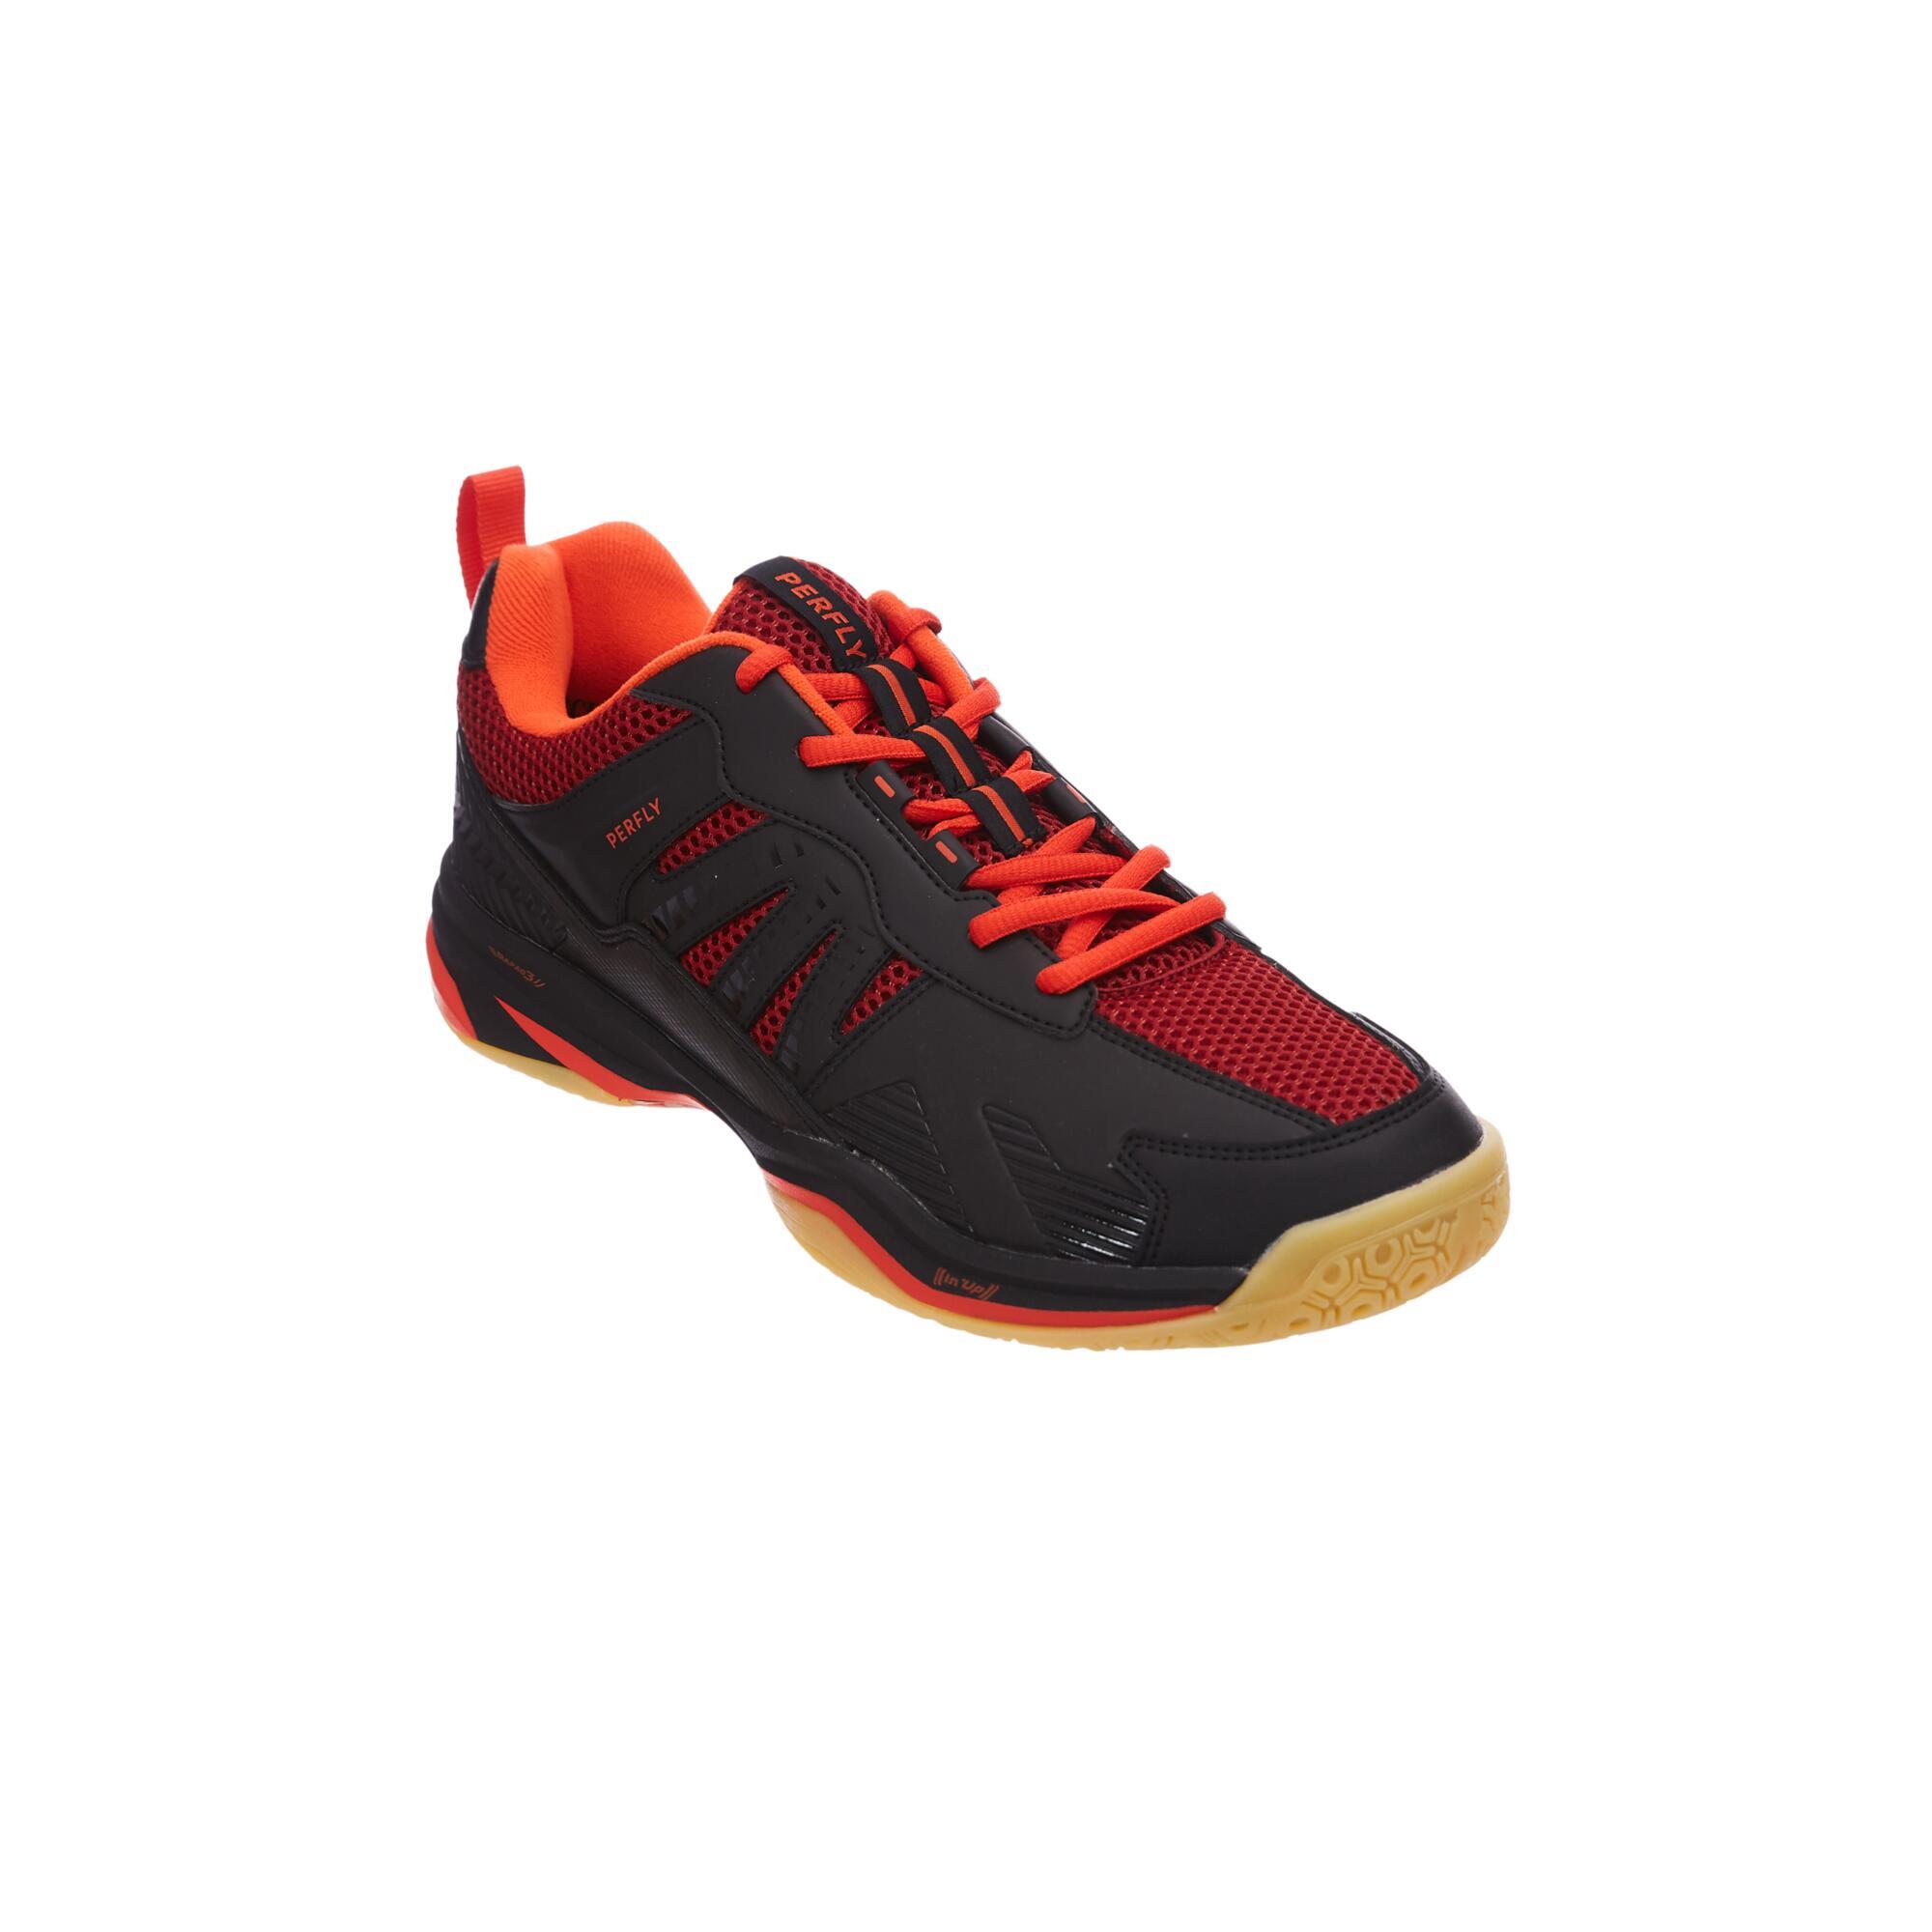 Men Badminton Shoes Max Comfort Bs 590 Black